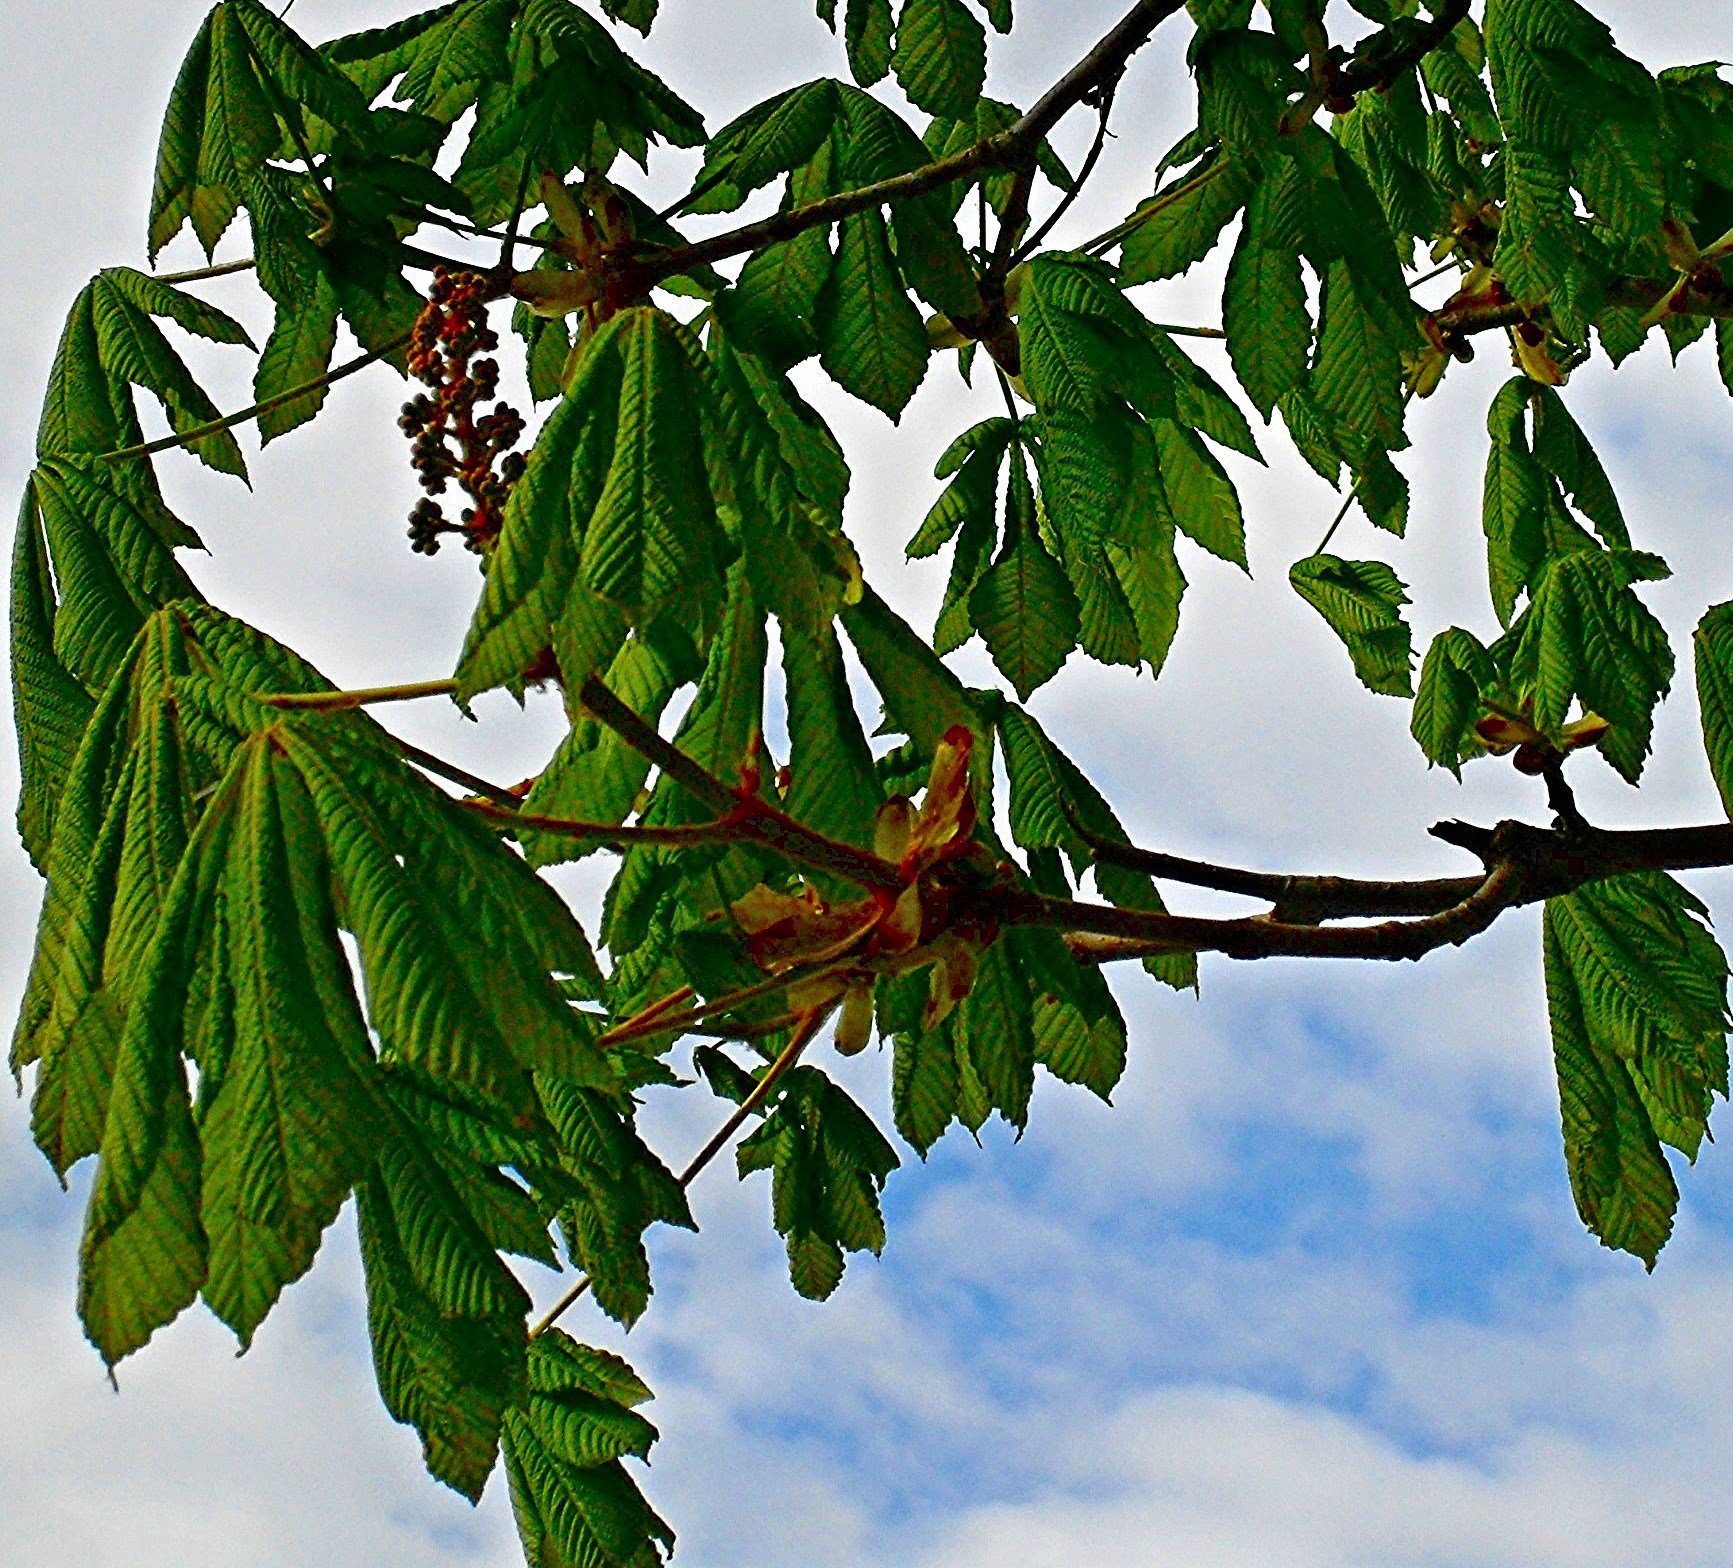 Каштан дерево фото листьев цветов и плодов